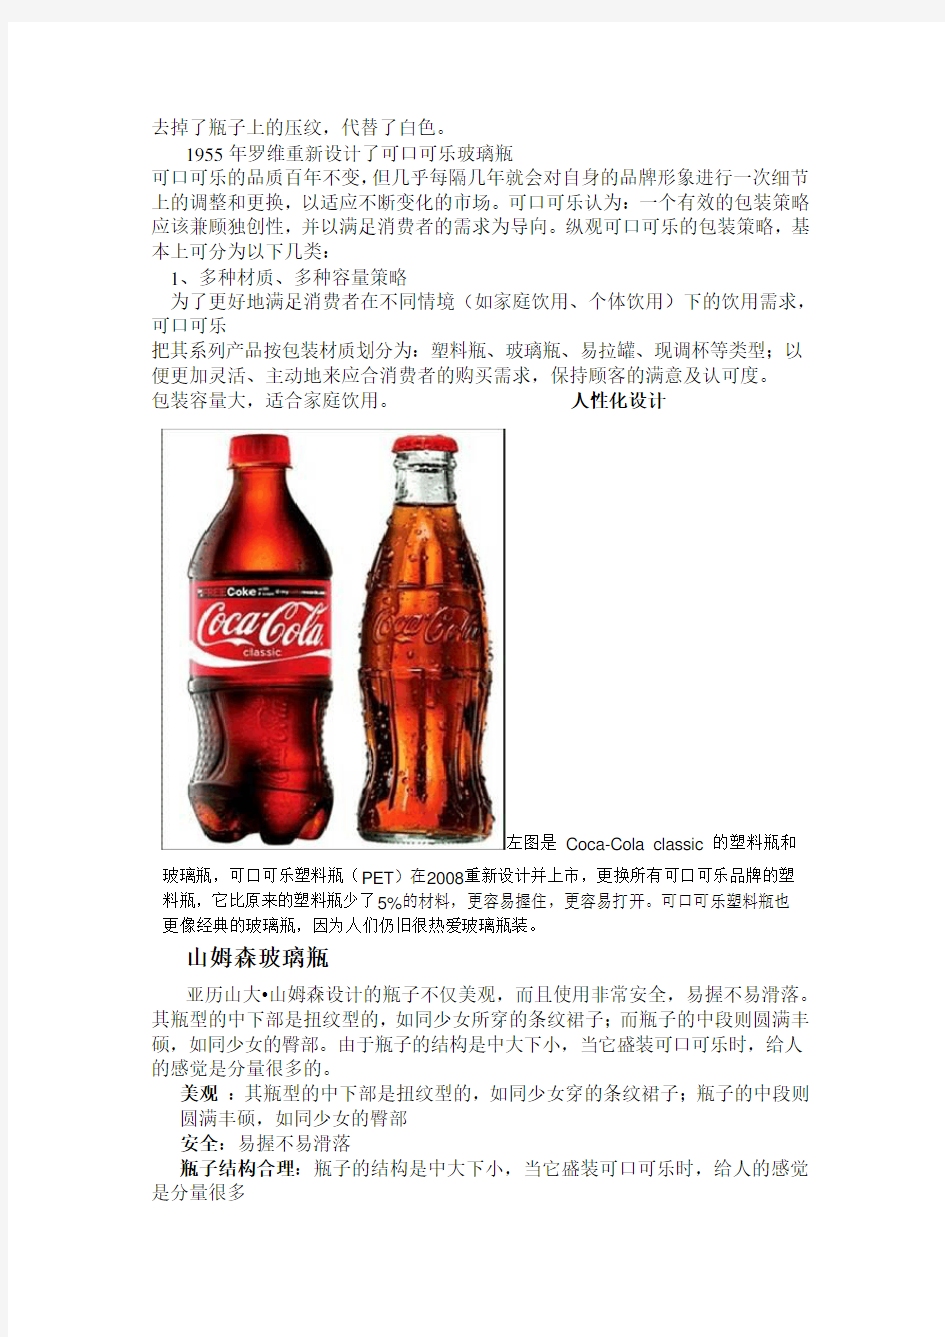 可口可乐瓶子的发展史